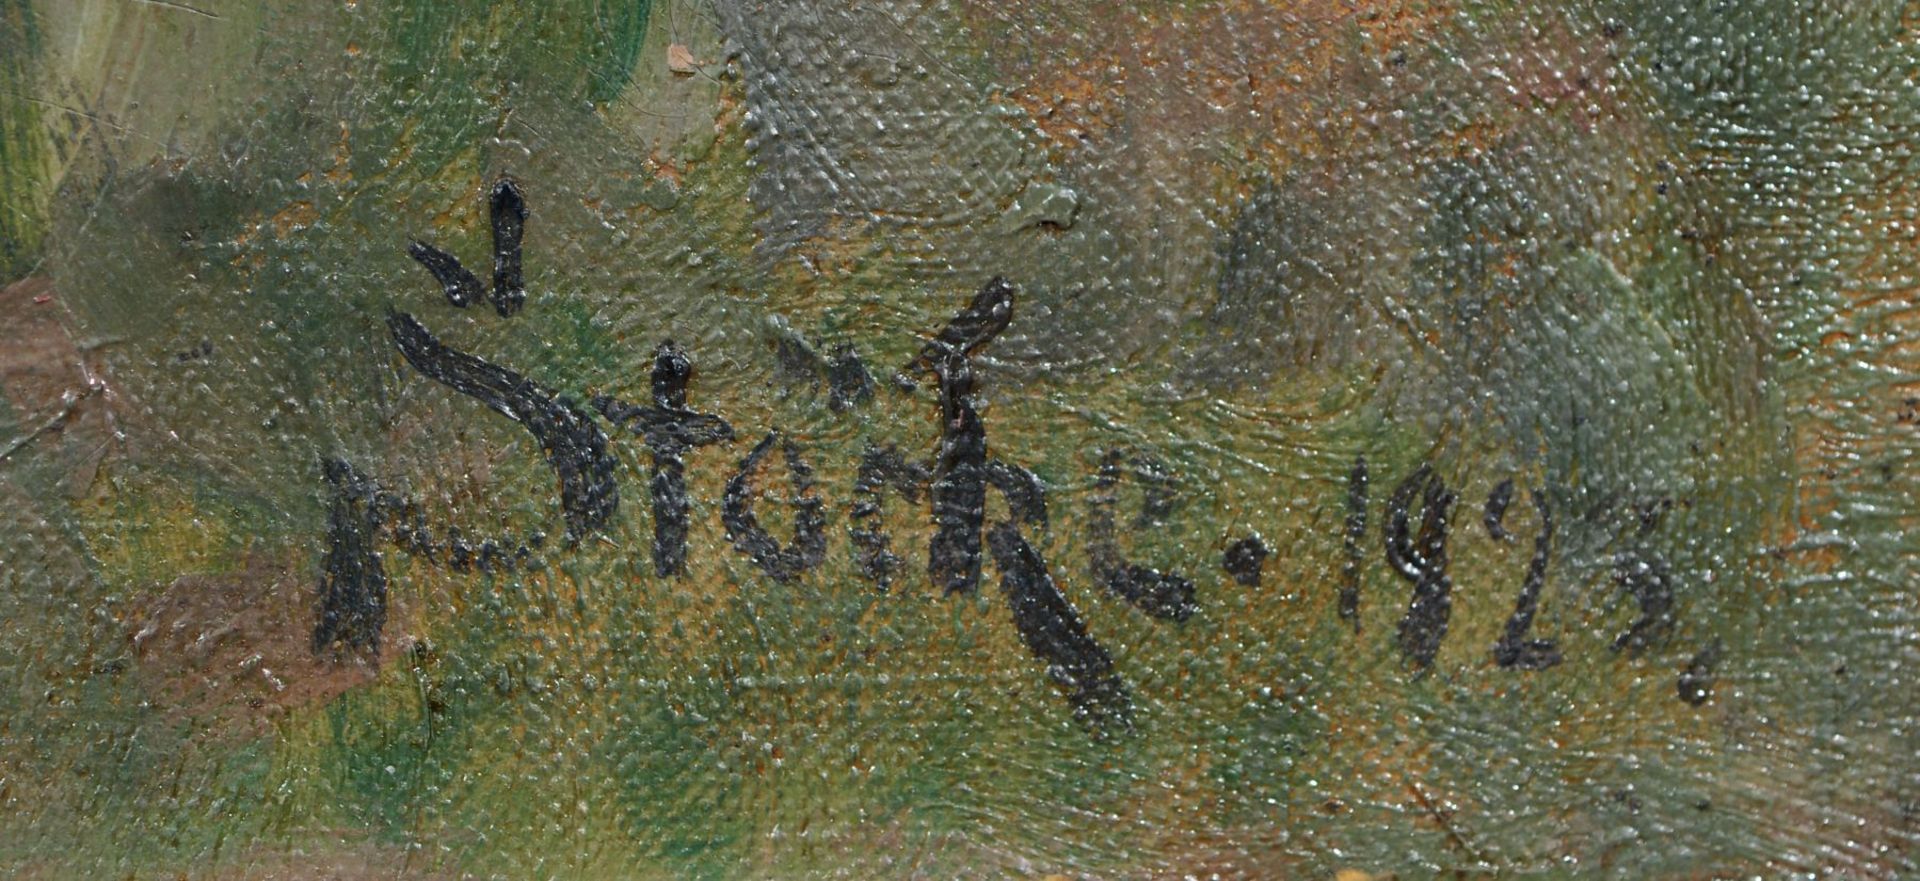 Alfred Stöcke, Kutschfahrt im Grünen. 1923. Öl auf Leinwand. Signiert "Stöcke" und datiert u.re. - Bild 2 aus 2